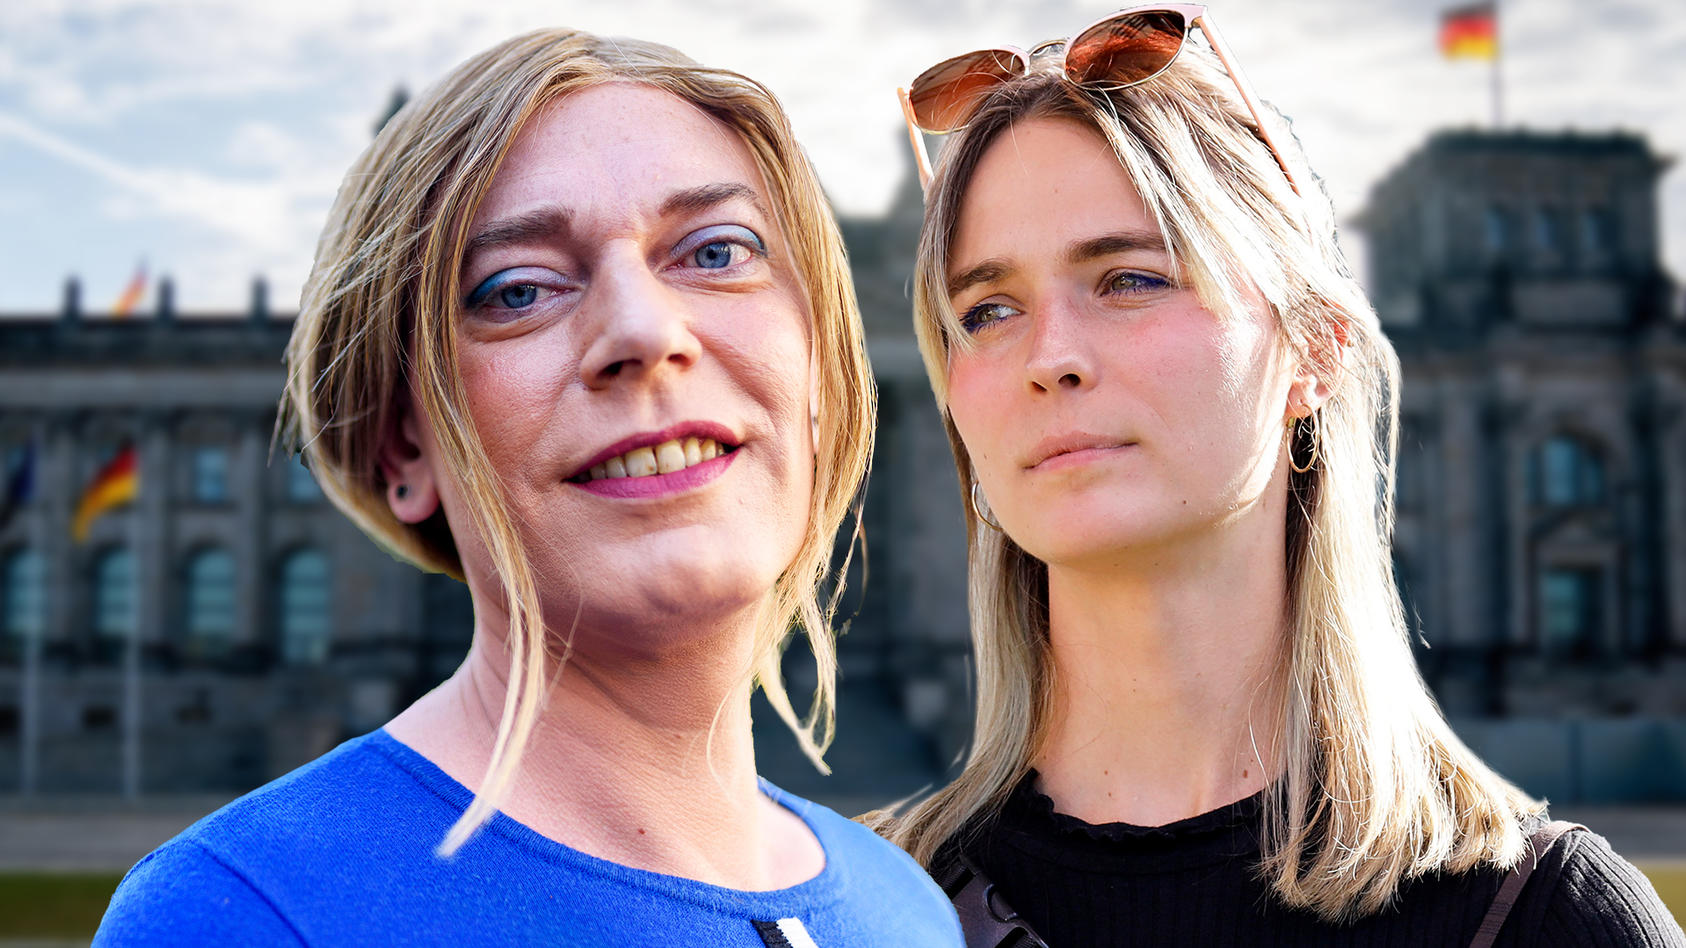 Erste Offen Lebende Trans Frauen Im Bundestag Wer Sind Nyke Slawik Und Tessa Ganserer